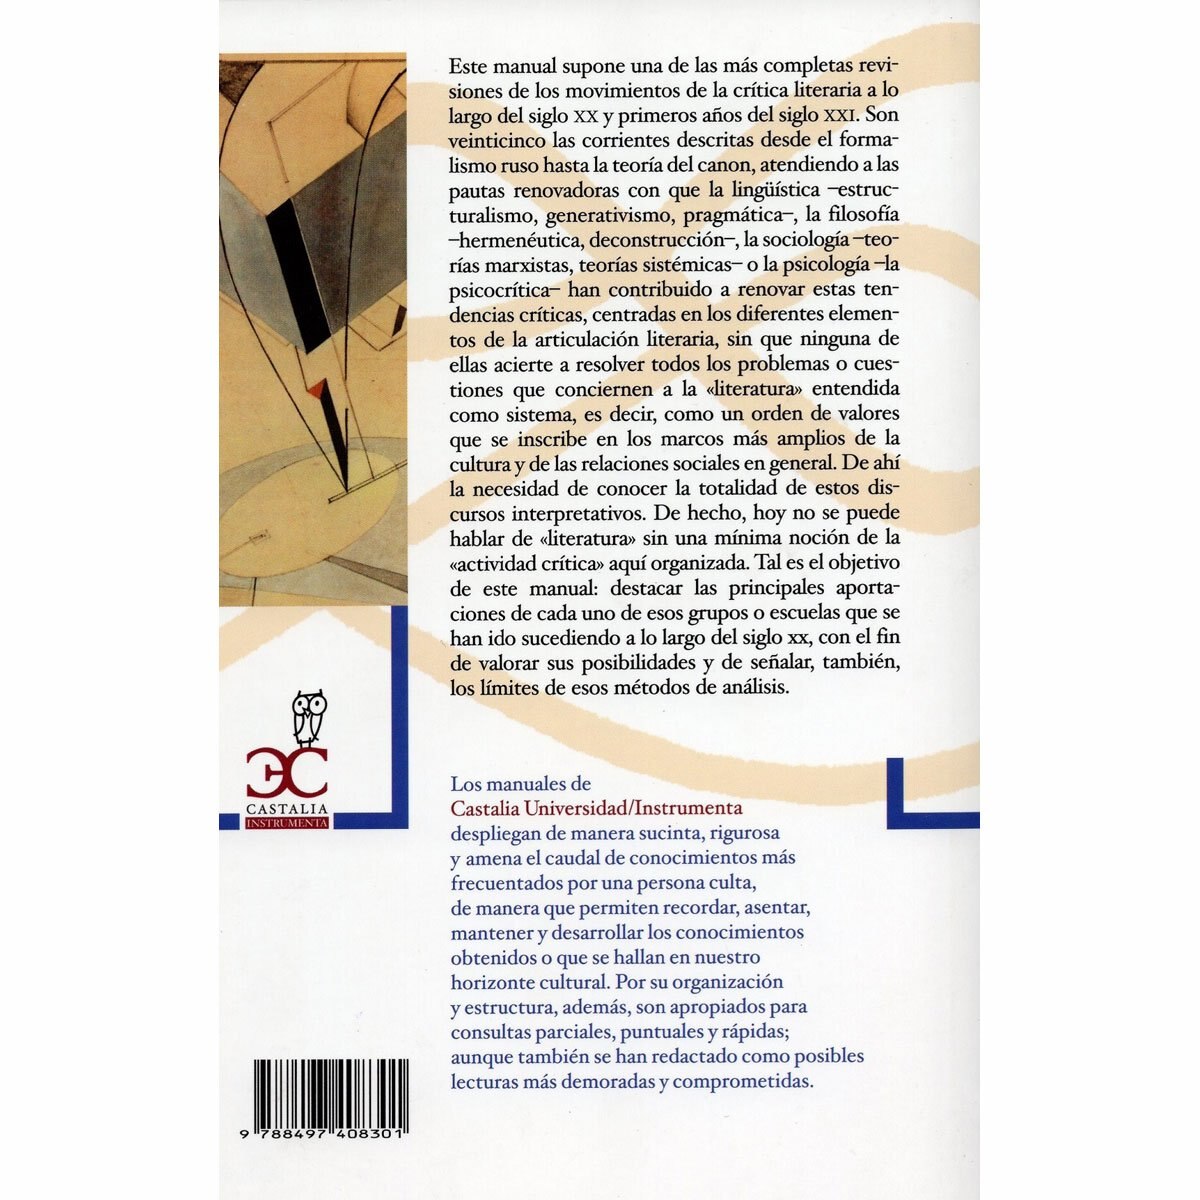 Manual de Crítica.literaria Contemporánea Castalia